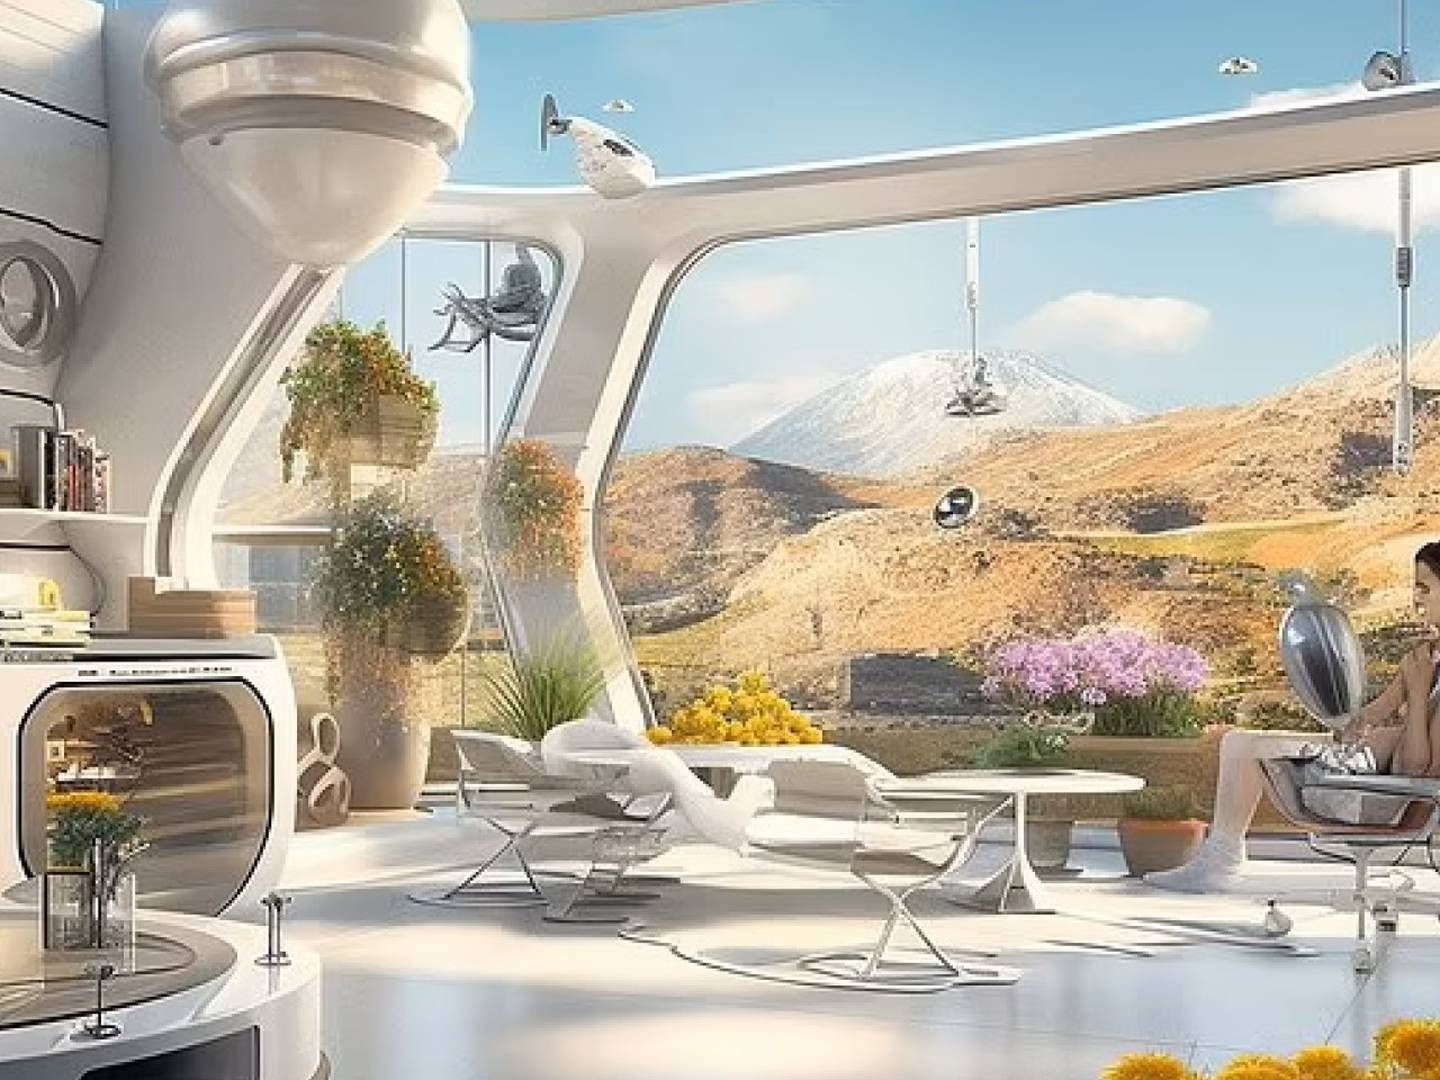 Parece un módulo de colonización espacial pero es CyberHut, una futurista casa  inteligente que ya se puede visitar en España